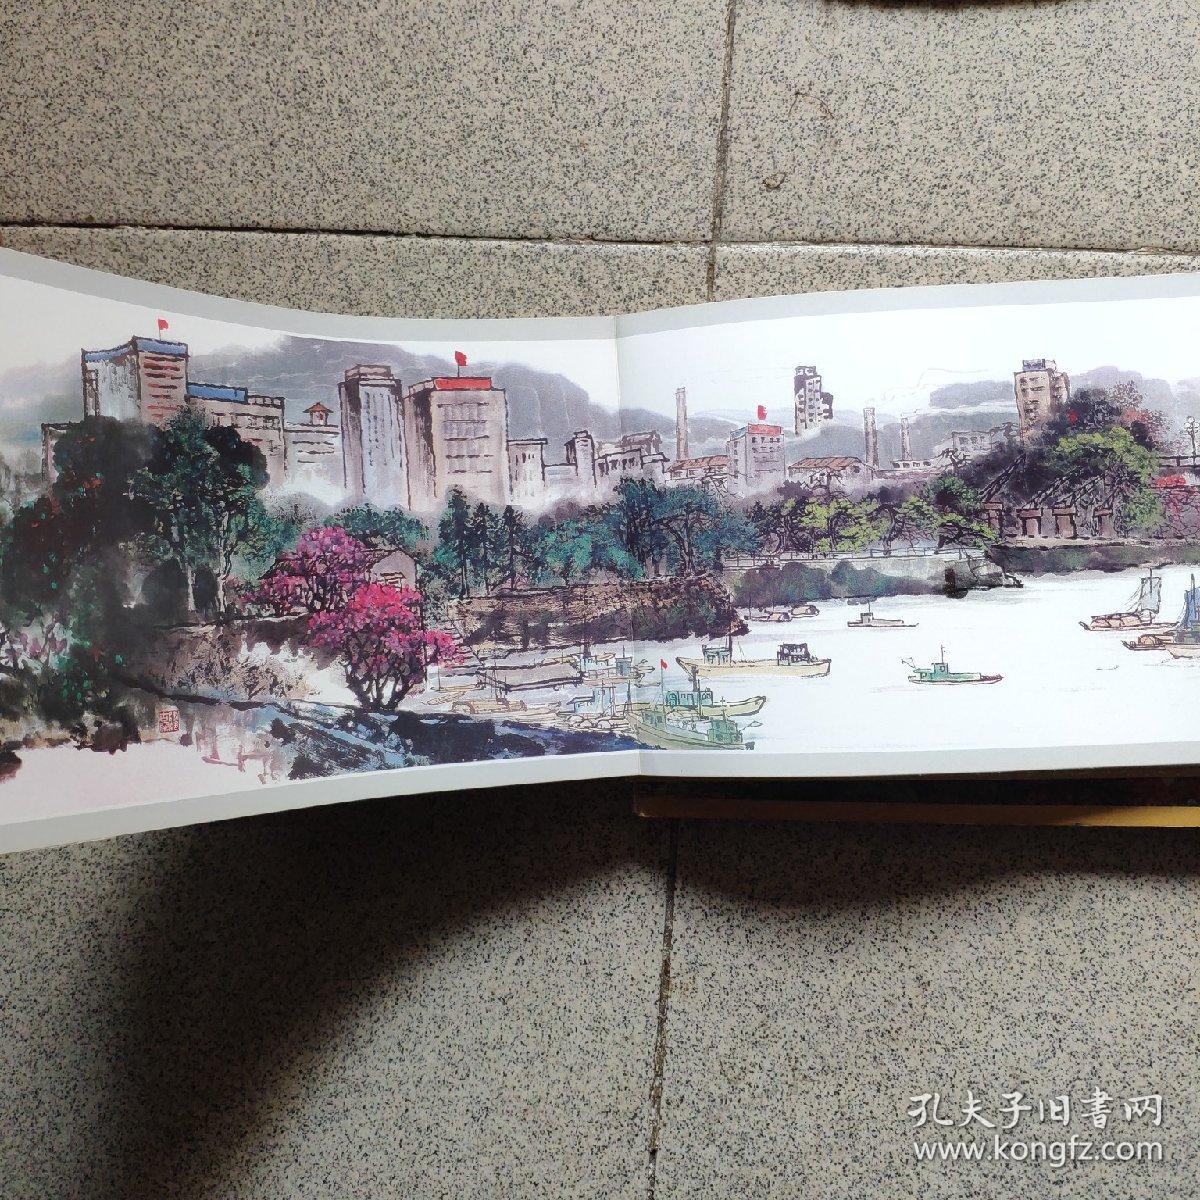 魅力佛山共建美好禅城 百名书画家百米长卷颂禅城 外壳比较久